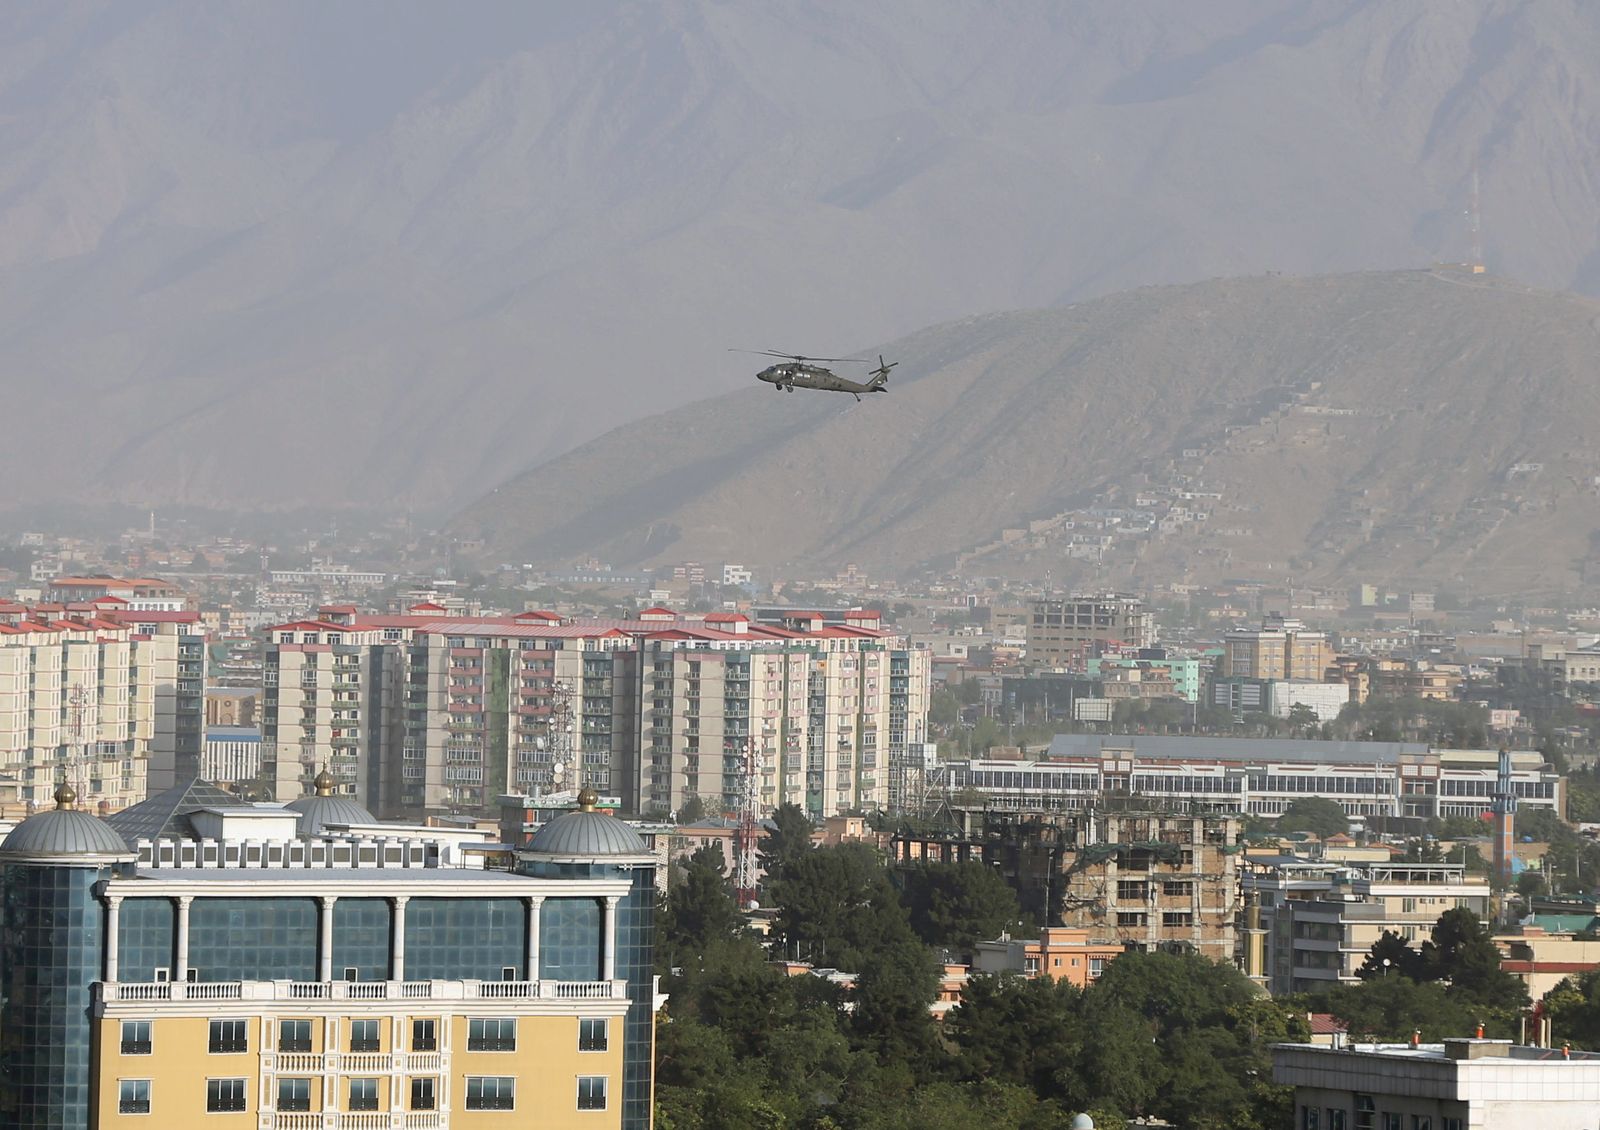 مروحية تابعة لحلف شمال الأطلسي تحلق فوق مدينة كابول بأفغانستان، 29 يونيو 2020 - REUTERS